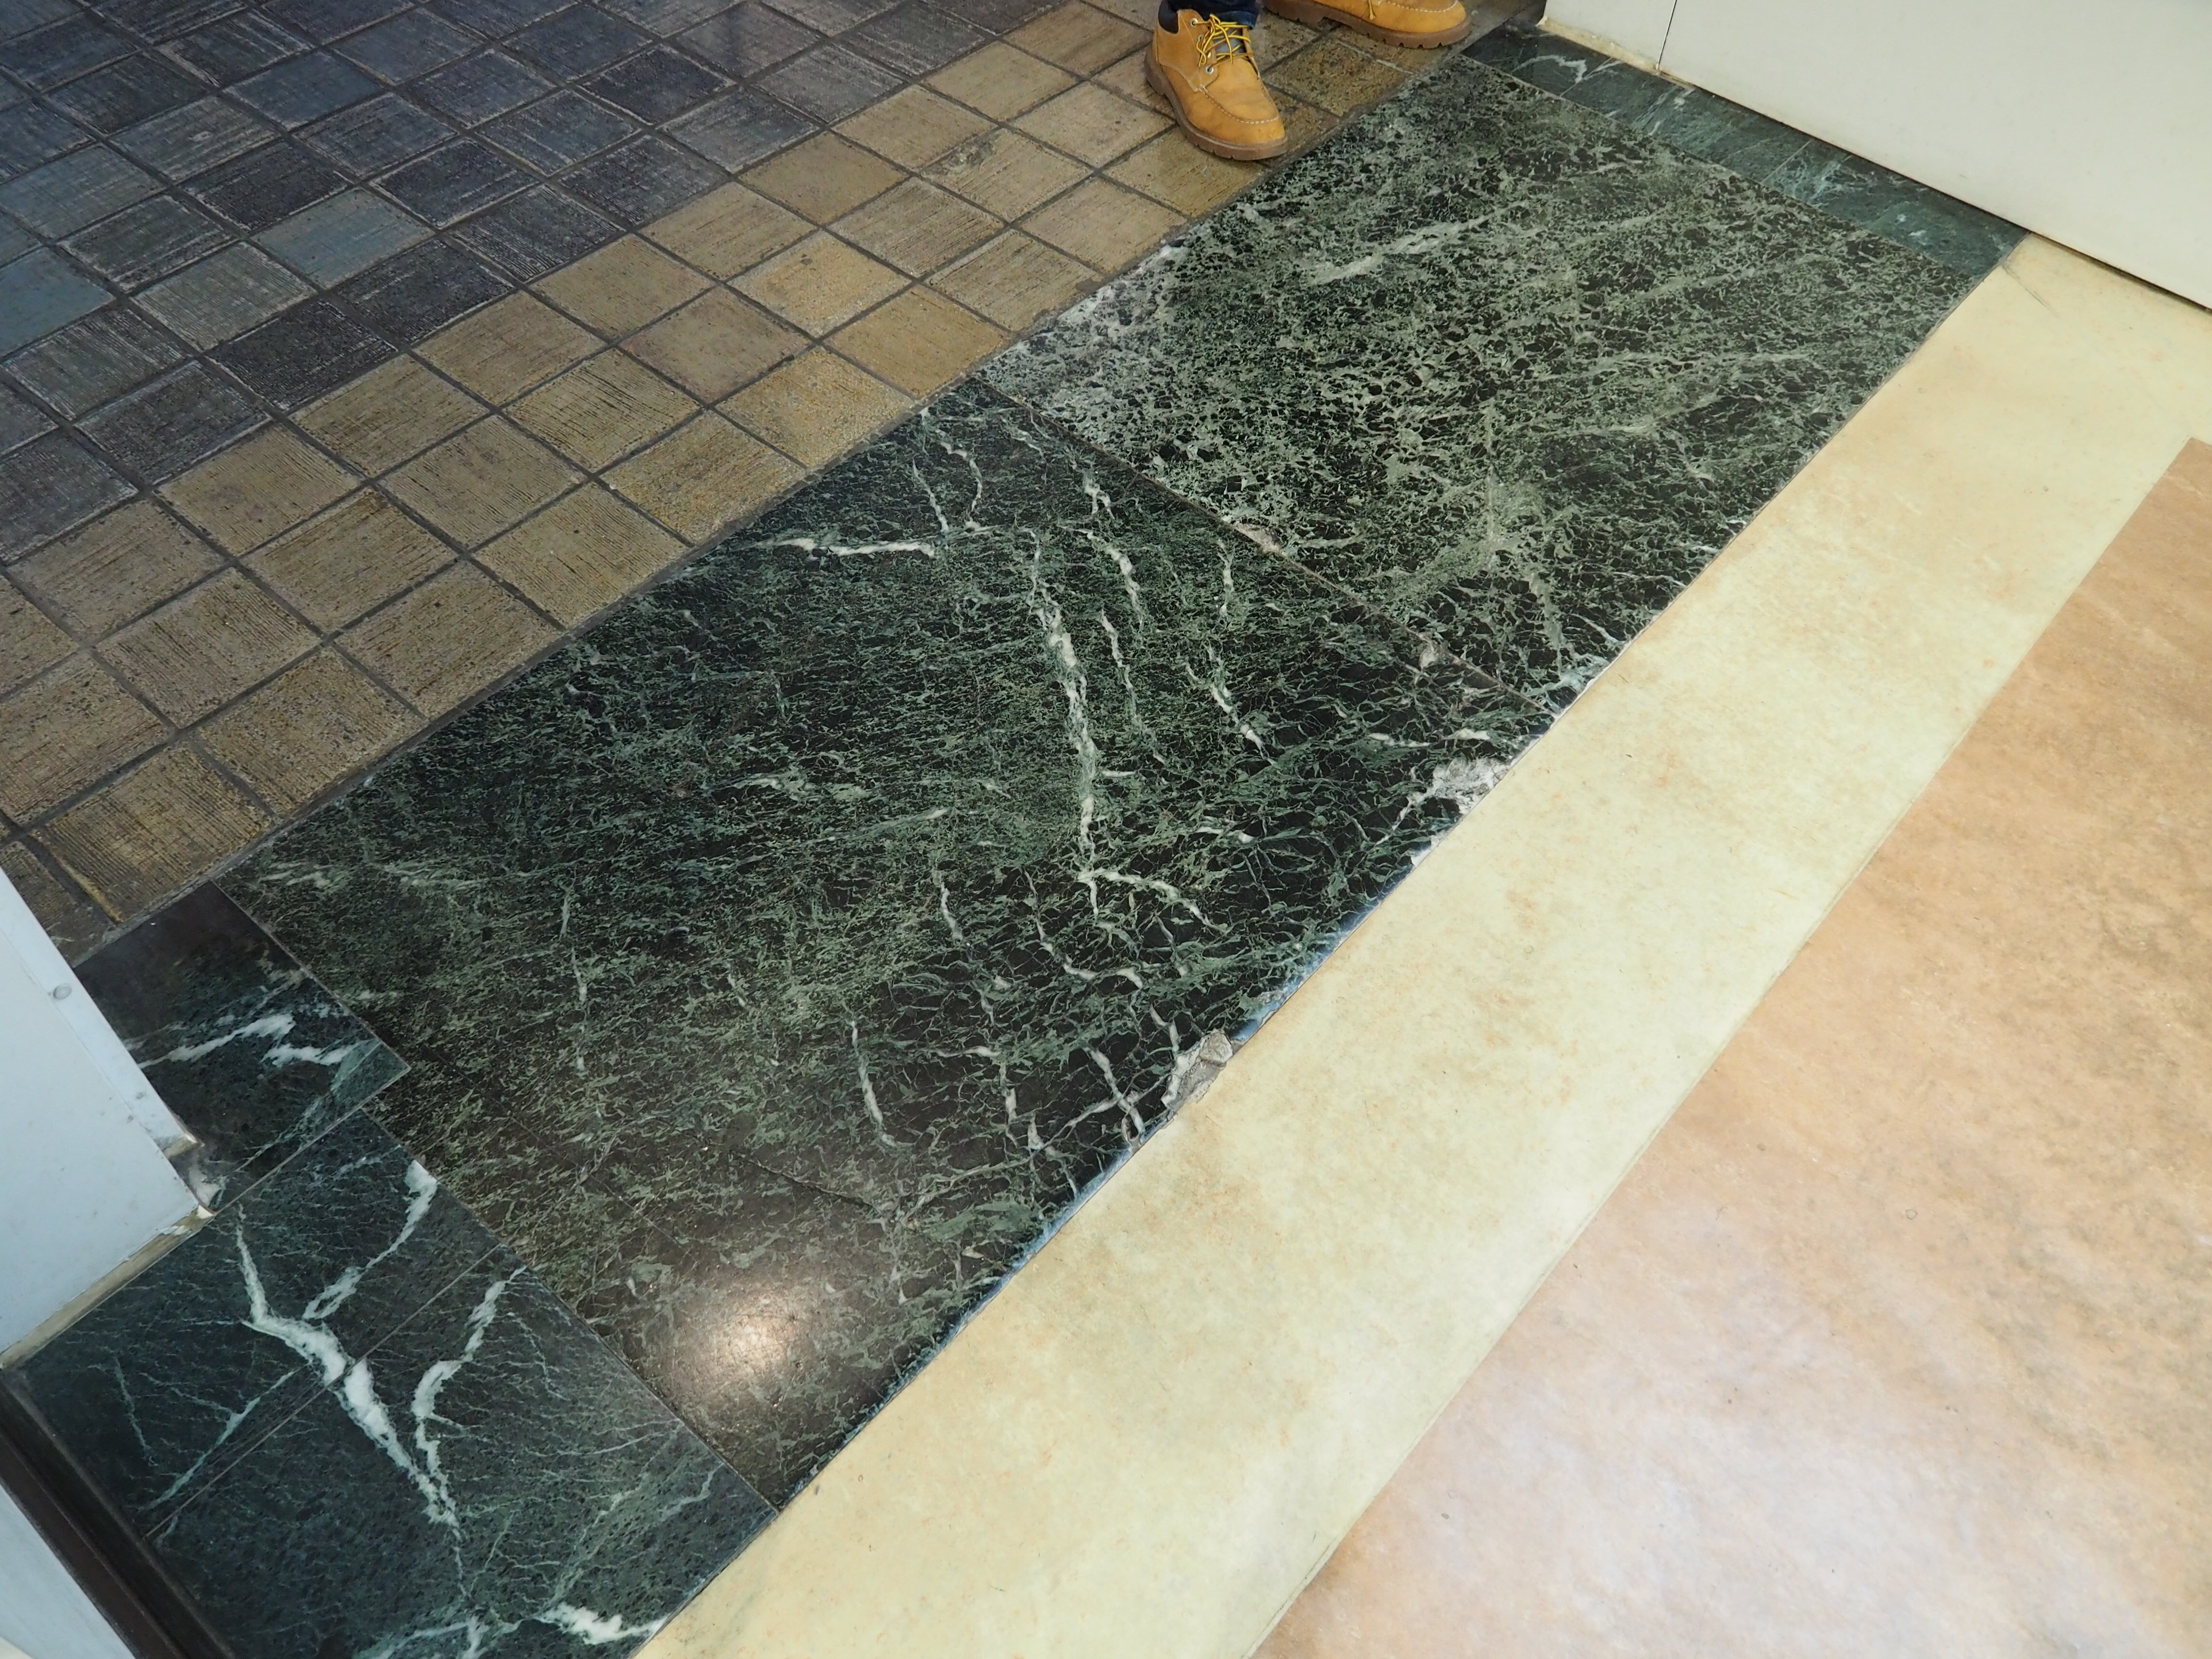 緑色系の大理石の1種の石材として用いられる蛇紋岩 serpentinite tiles on floor